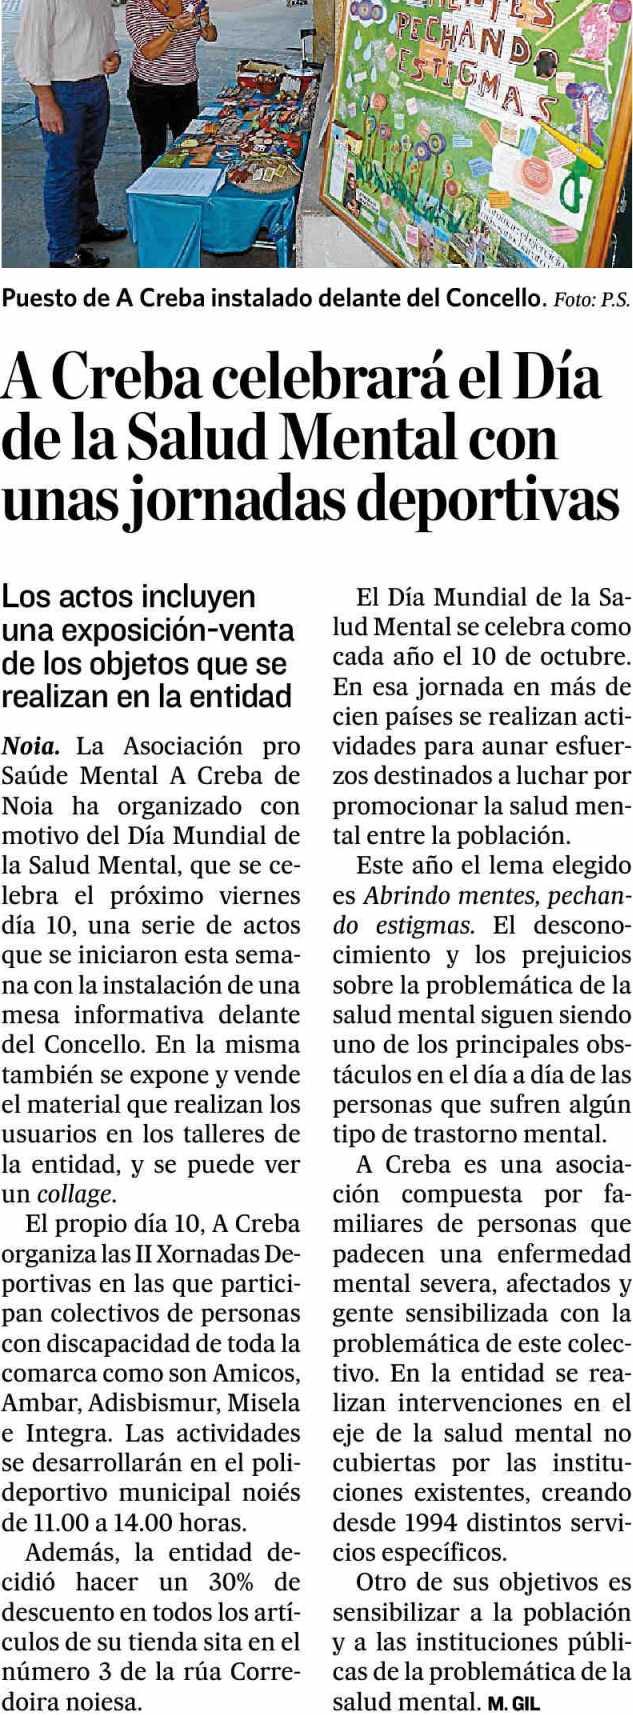 TIERRAS DE SANTIAGO SANTIAGO Prensa: Tirada: Difusión: Diaria Sin datos OJD Sin datos OJD 04/10/14 Sección: LOCAL